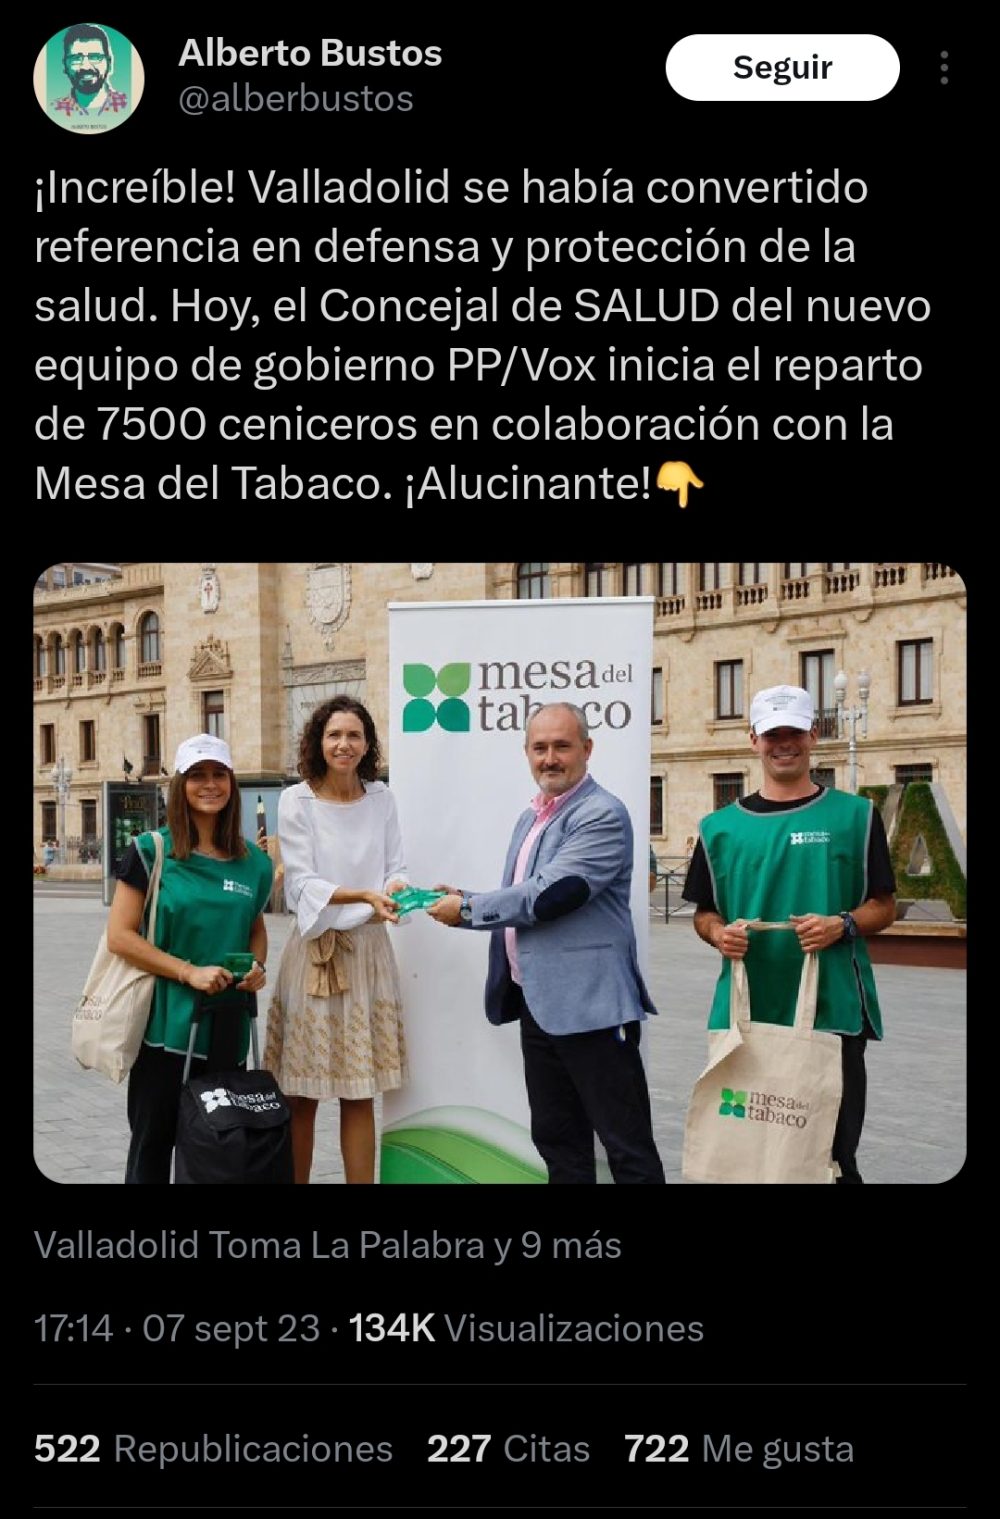 El concejal de salud de Valladolid (PP/VOX) repartiendo ceniceros